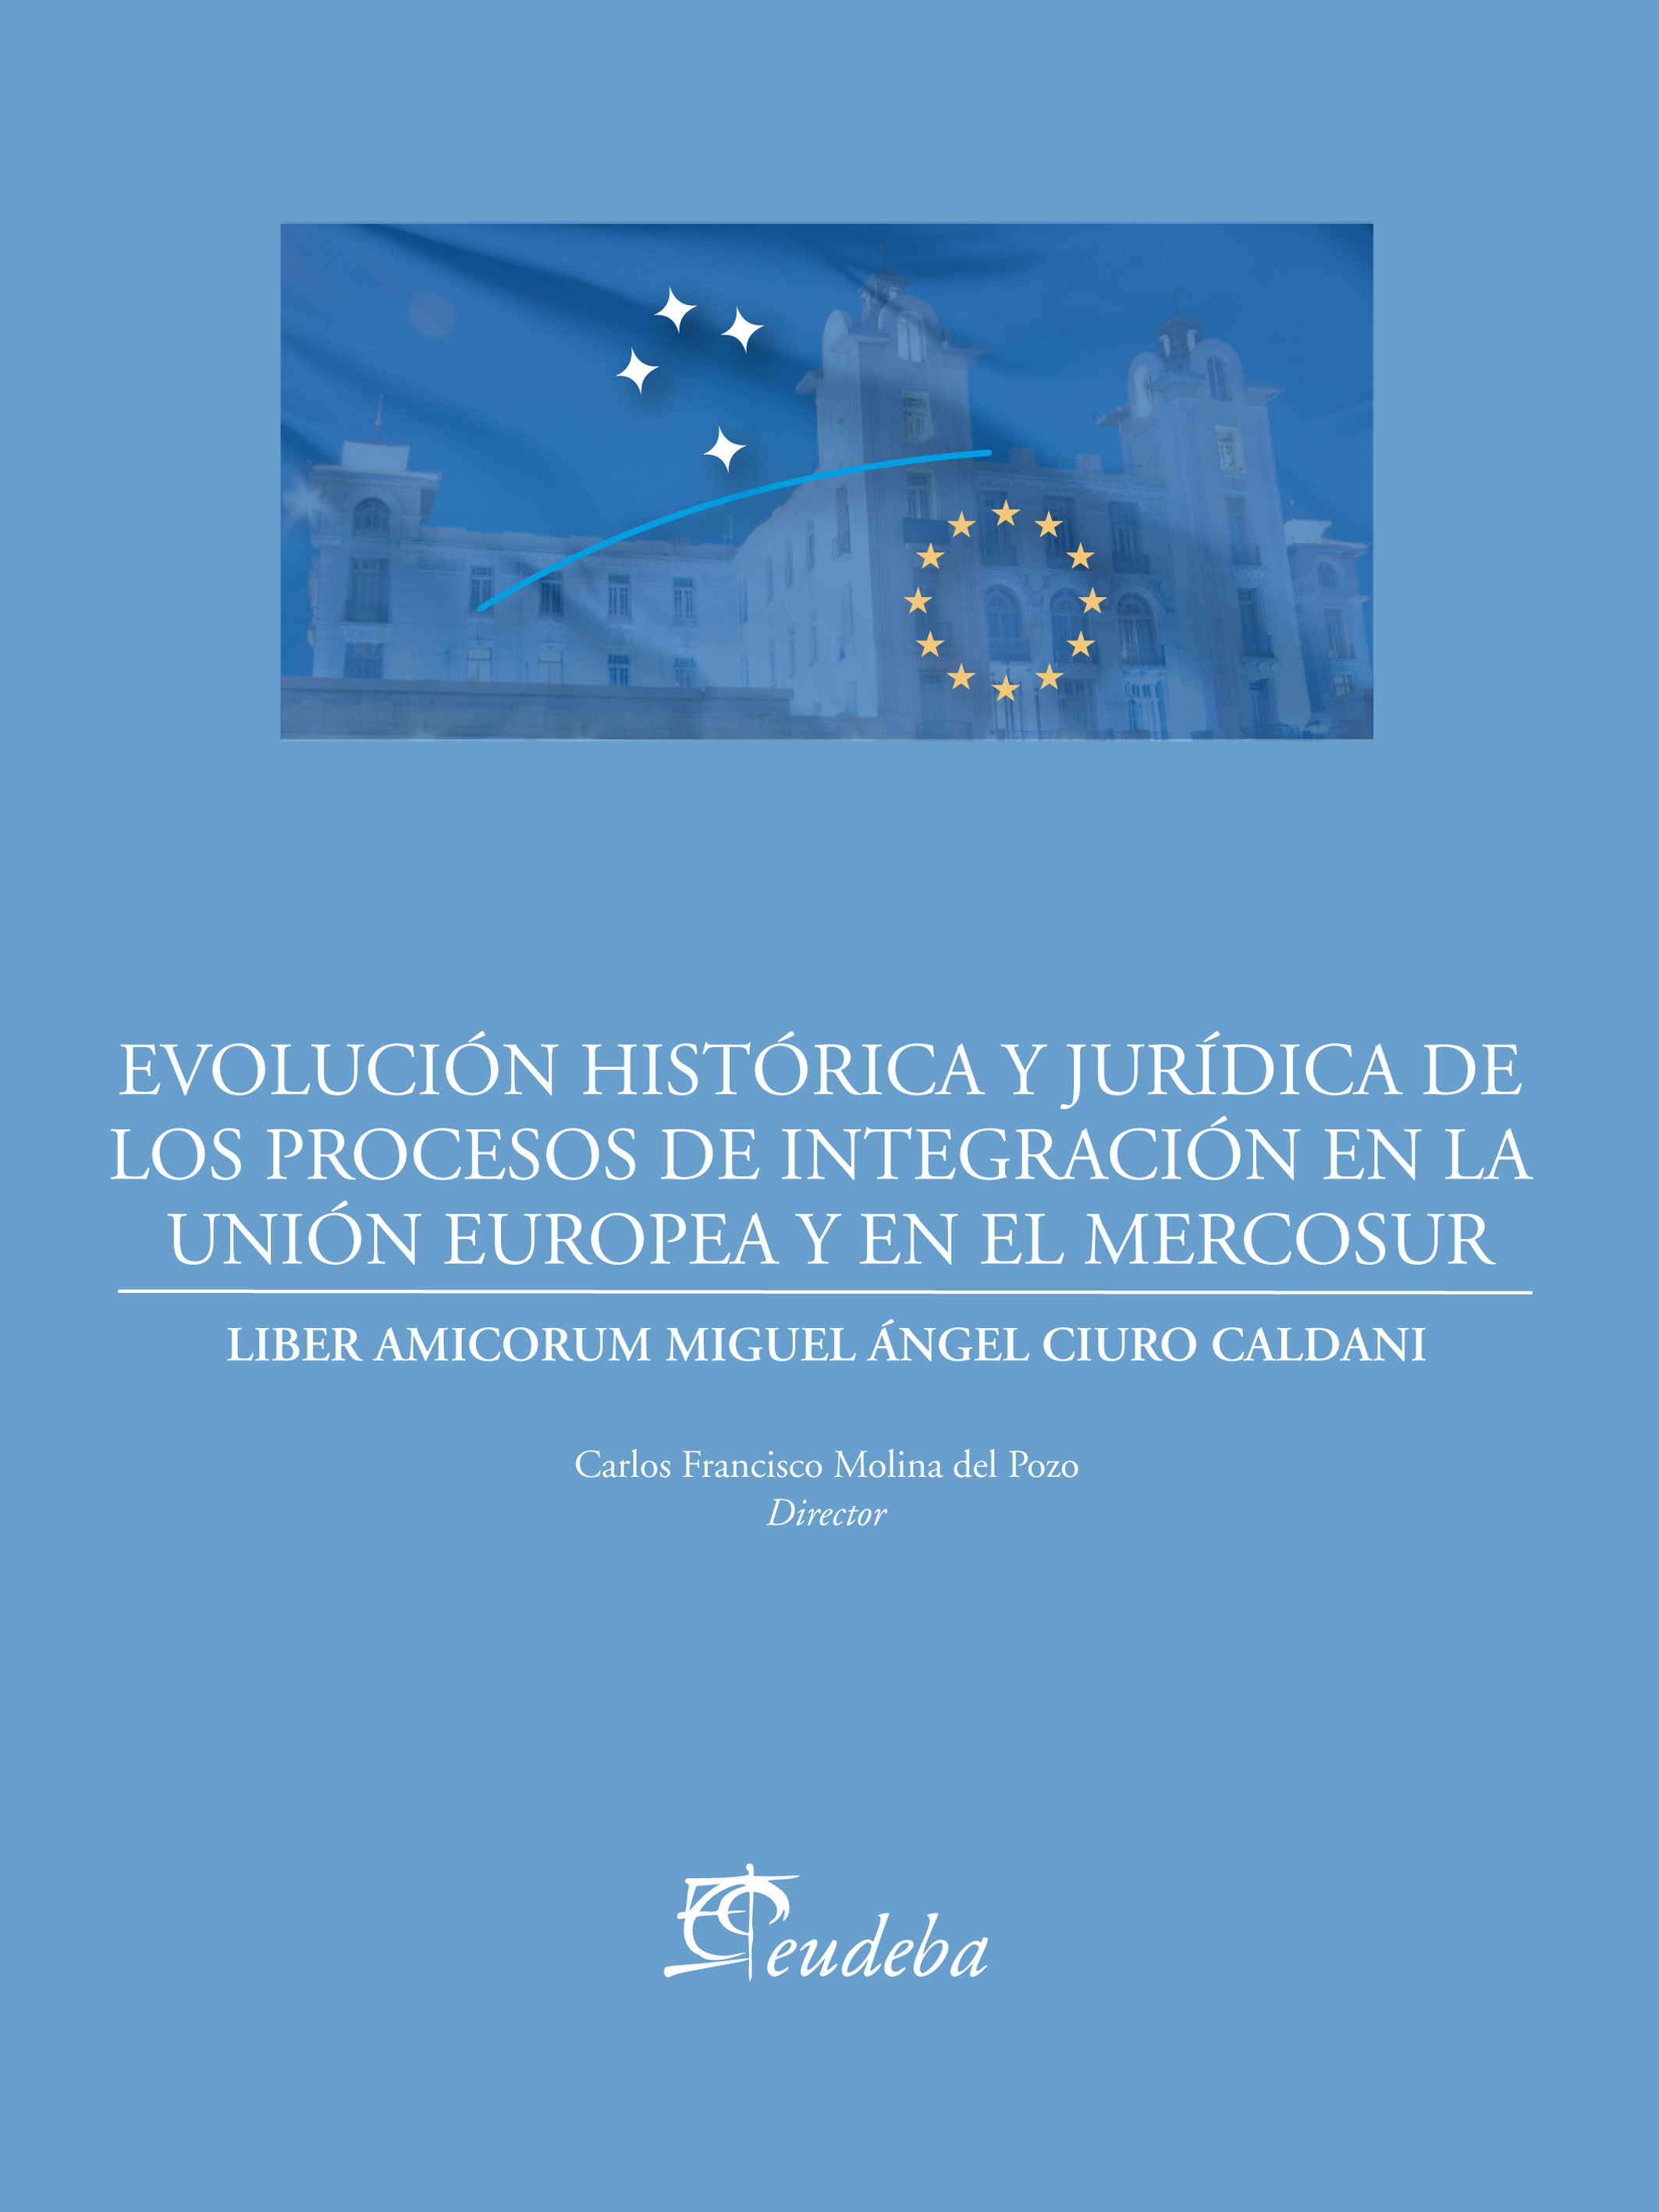 Evolución histórica y jurídica de los procesos de integración de la Unión Europea y el Mercosur